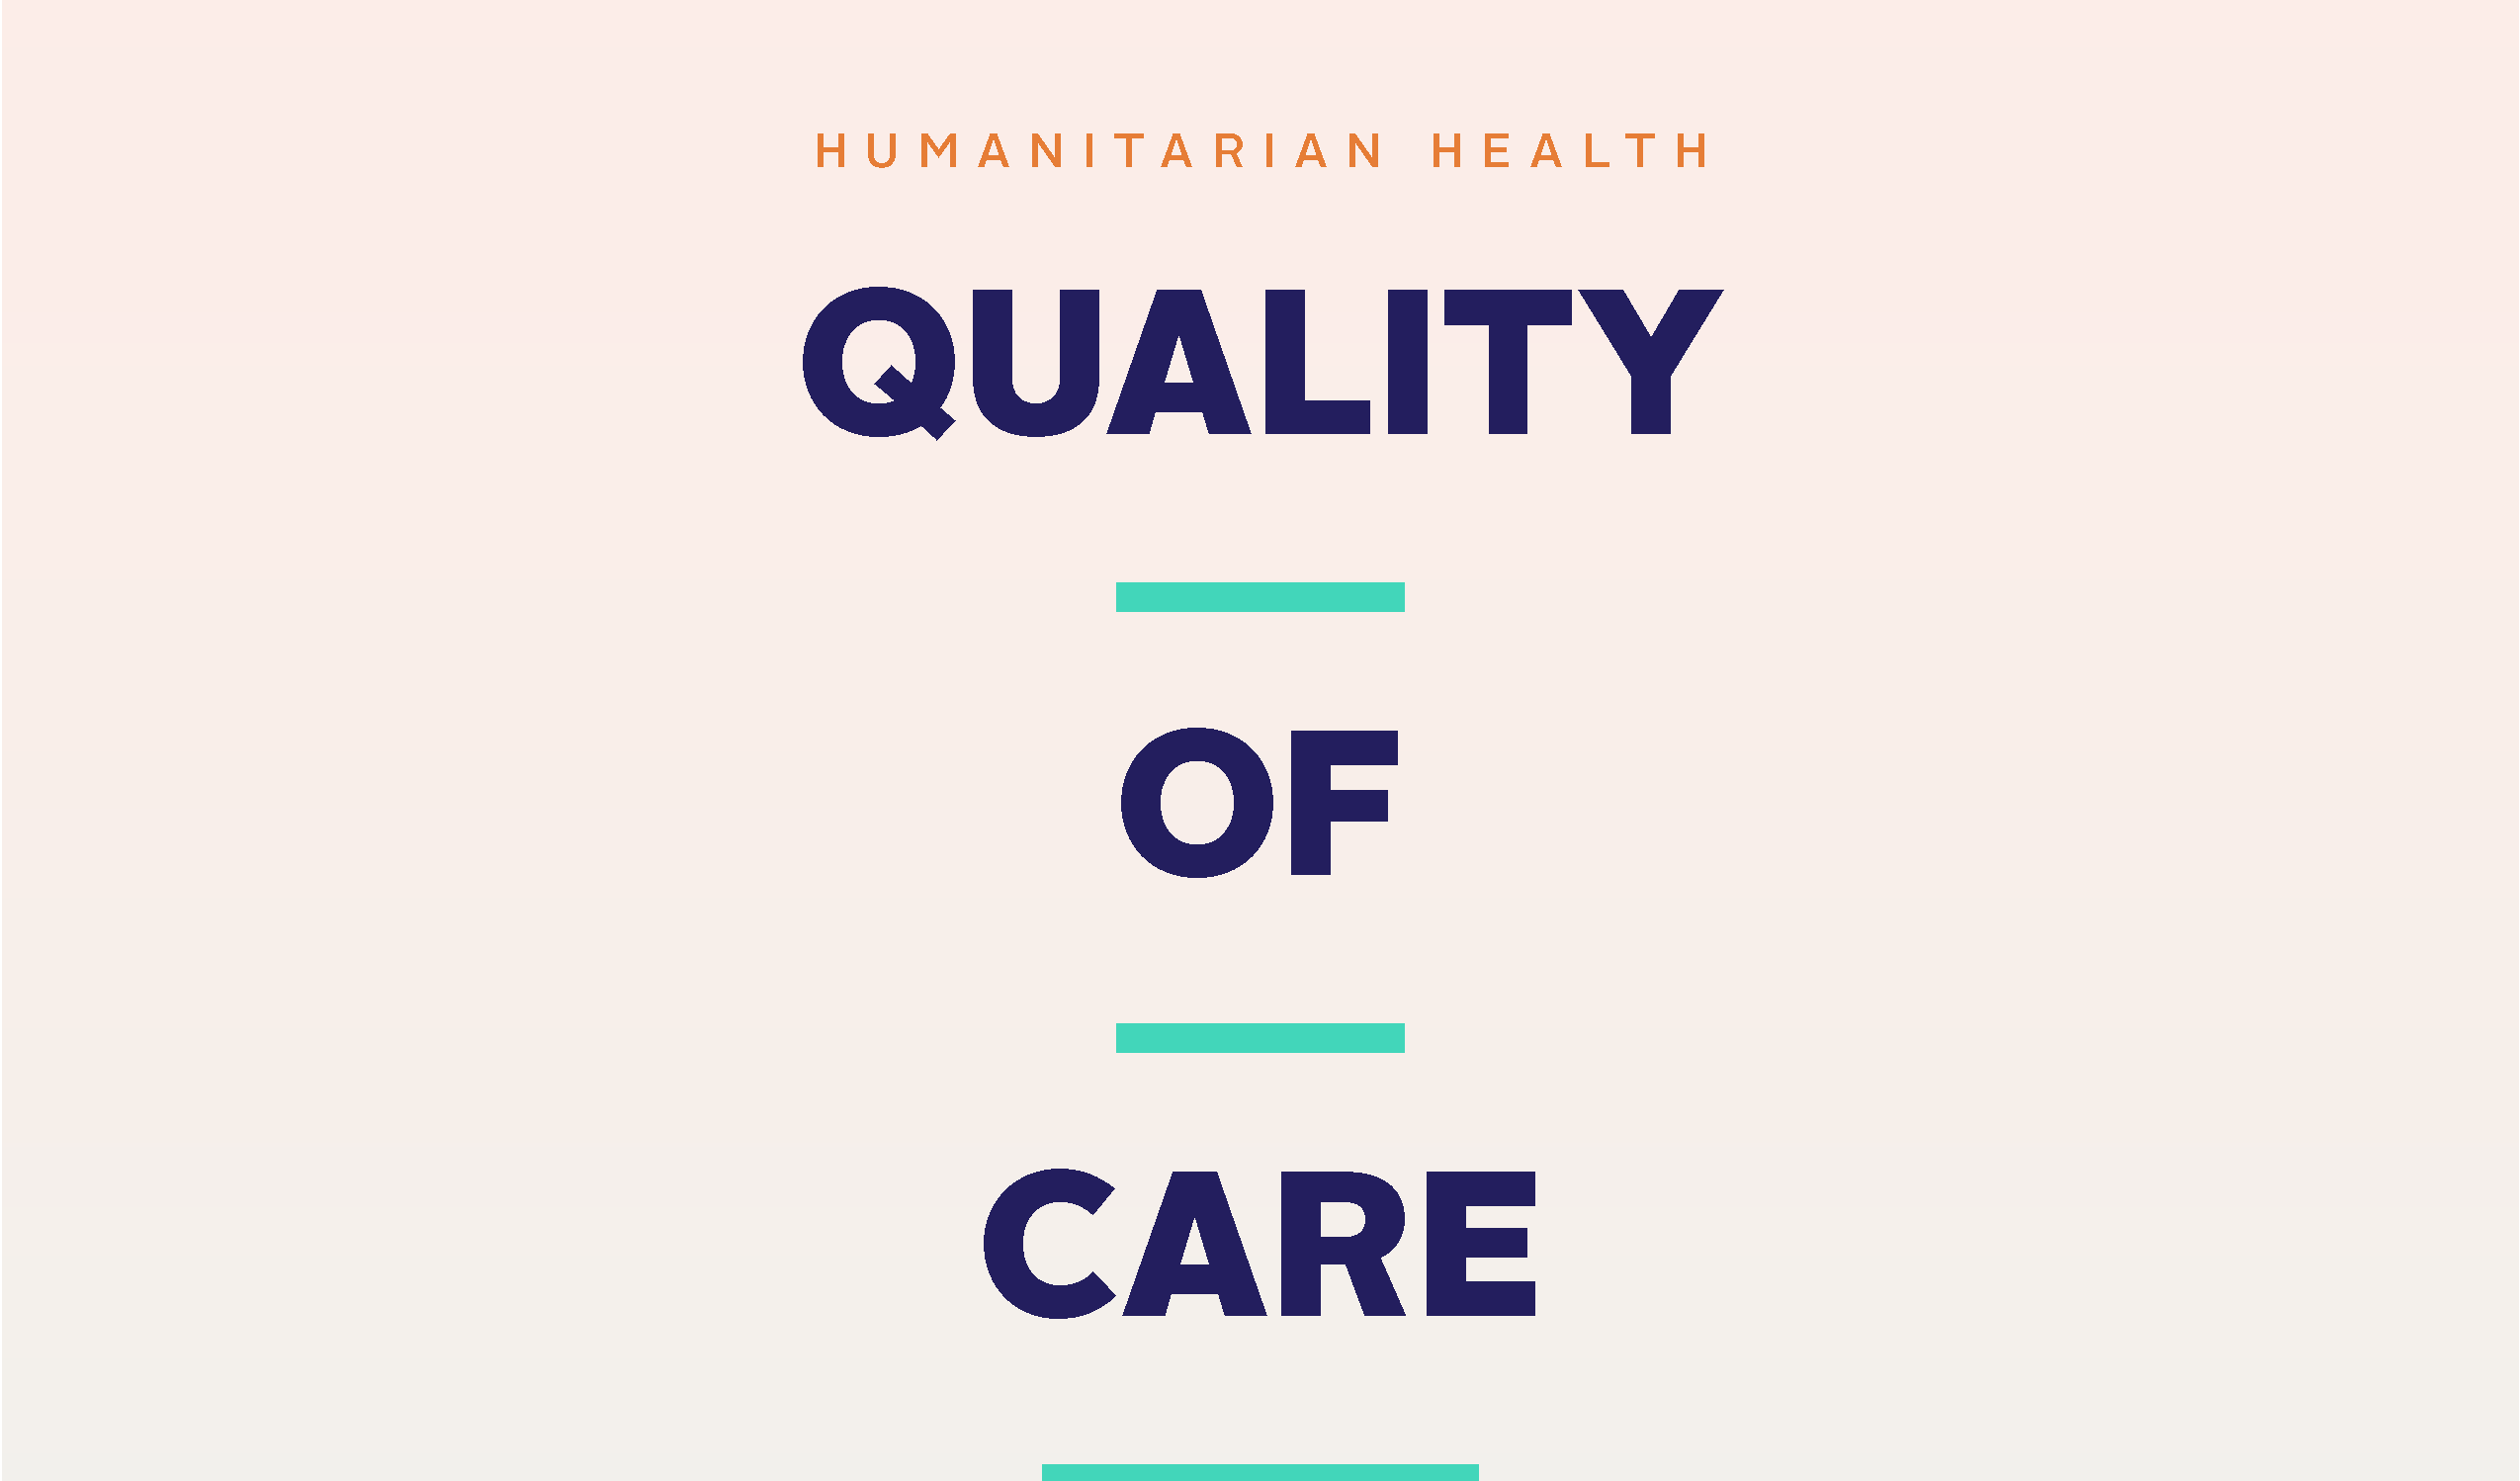 Humanitarian Health Quality of Care Toolkit inclui uma seção sobre Cuidados Paliativos em ambientes humanitários